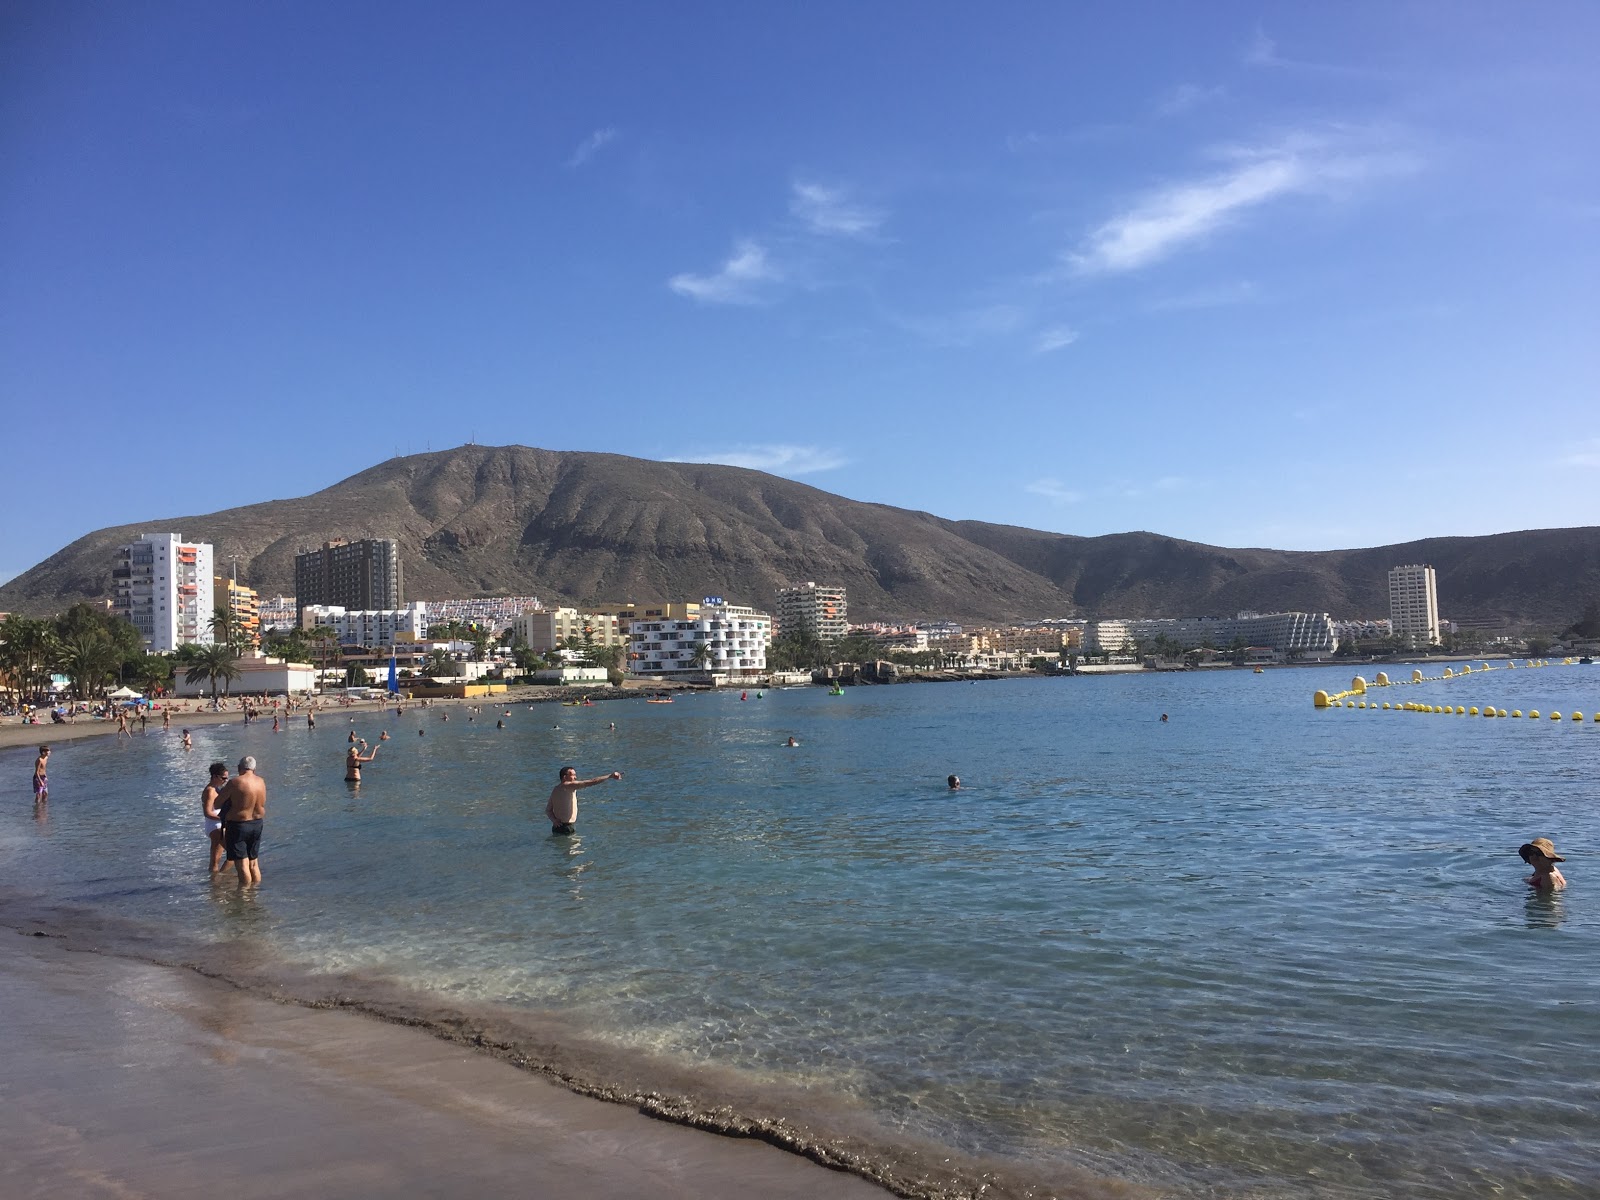 Playa de Los Cristianos'in fotoğrafı çok temiz temizlik seviyesi ile